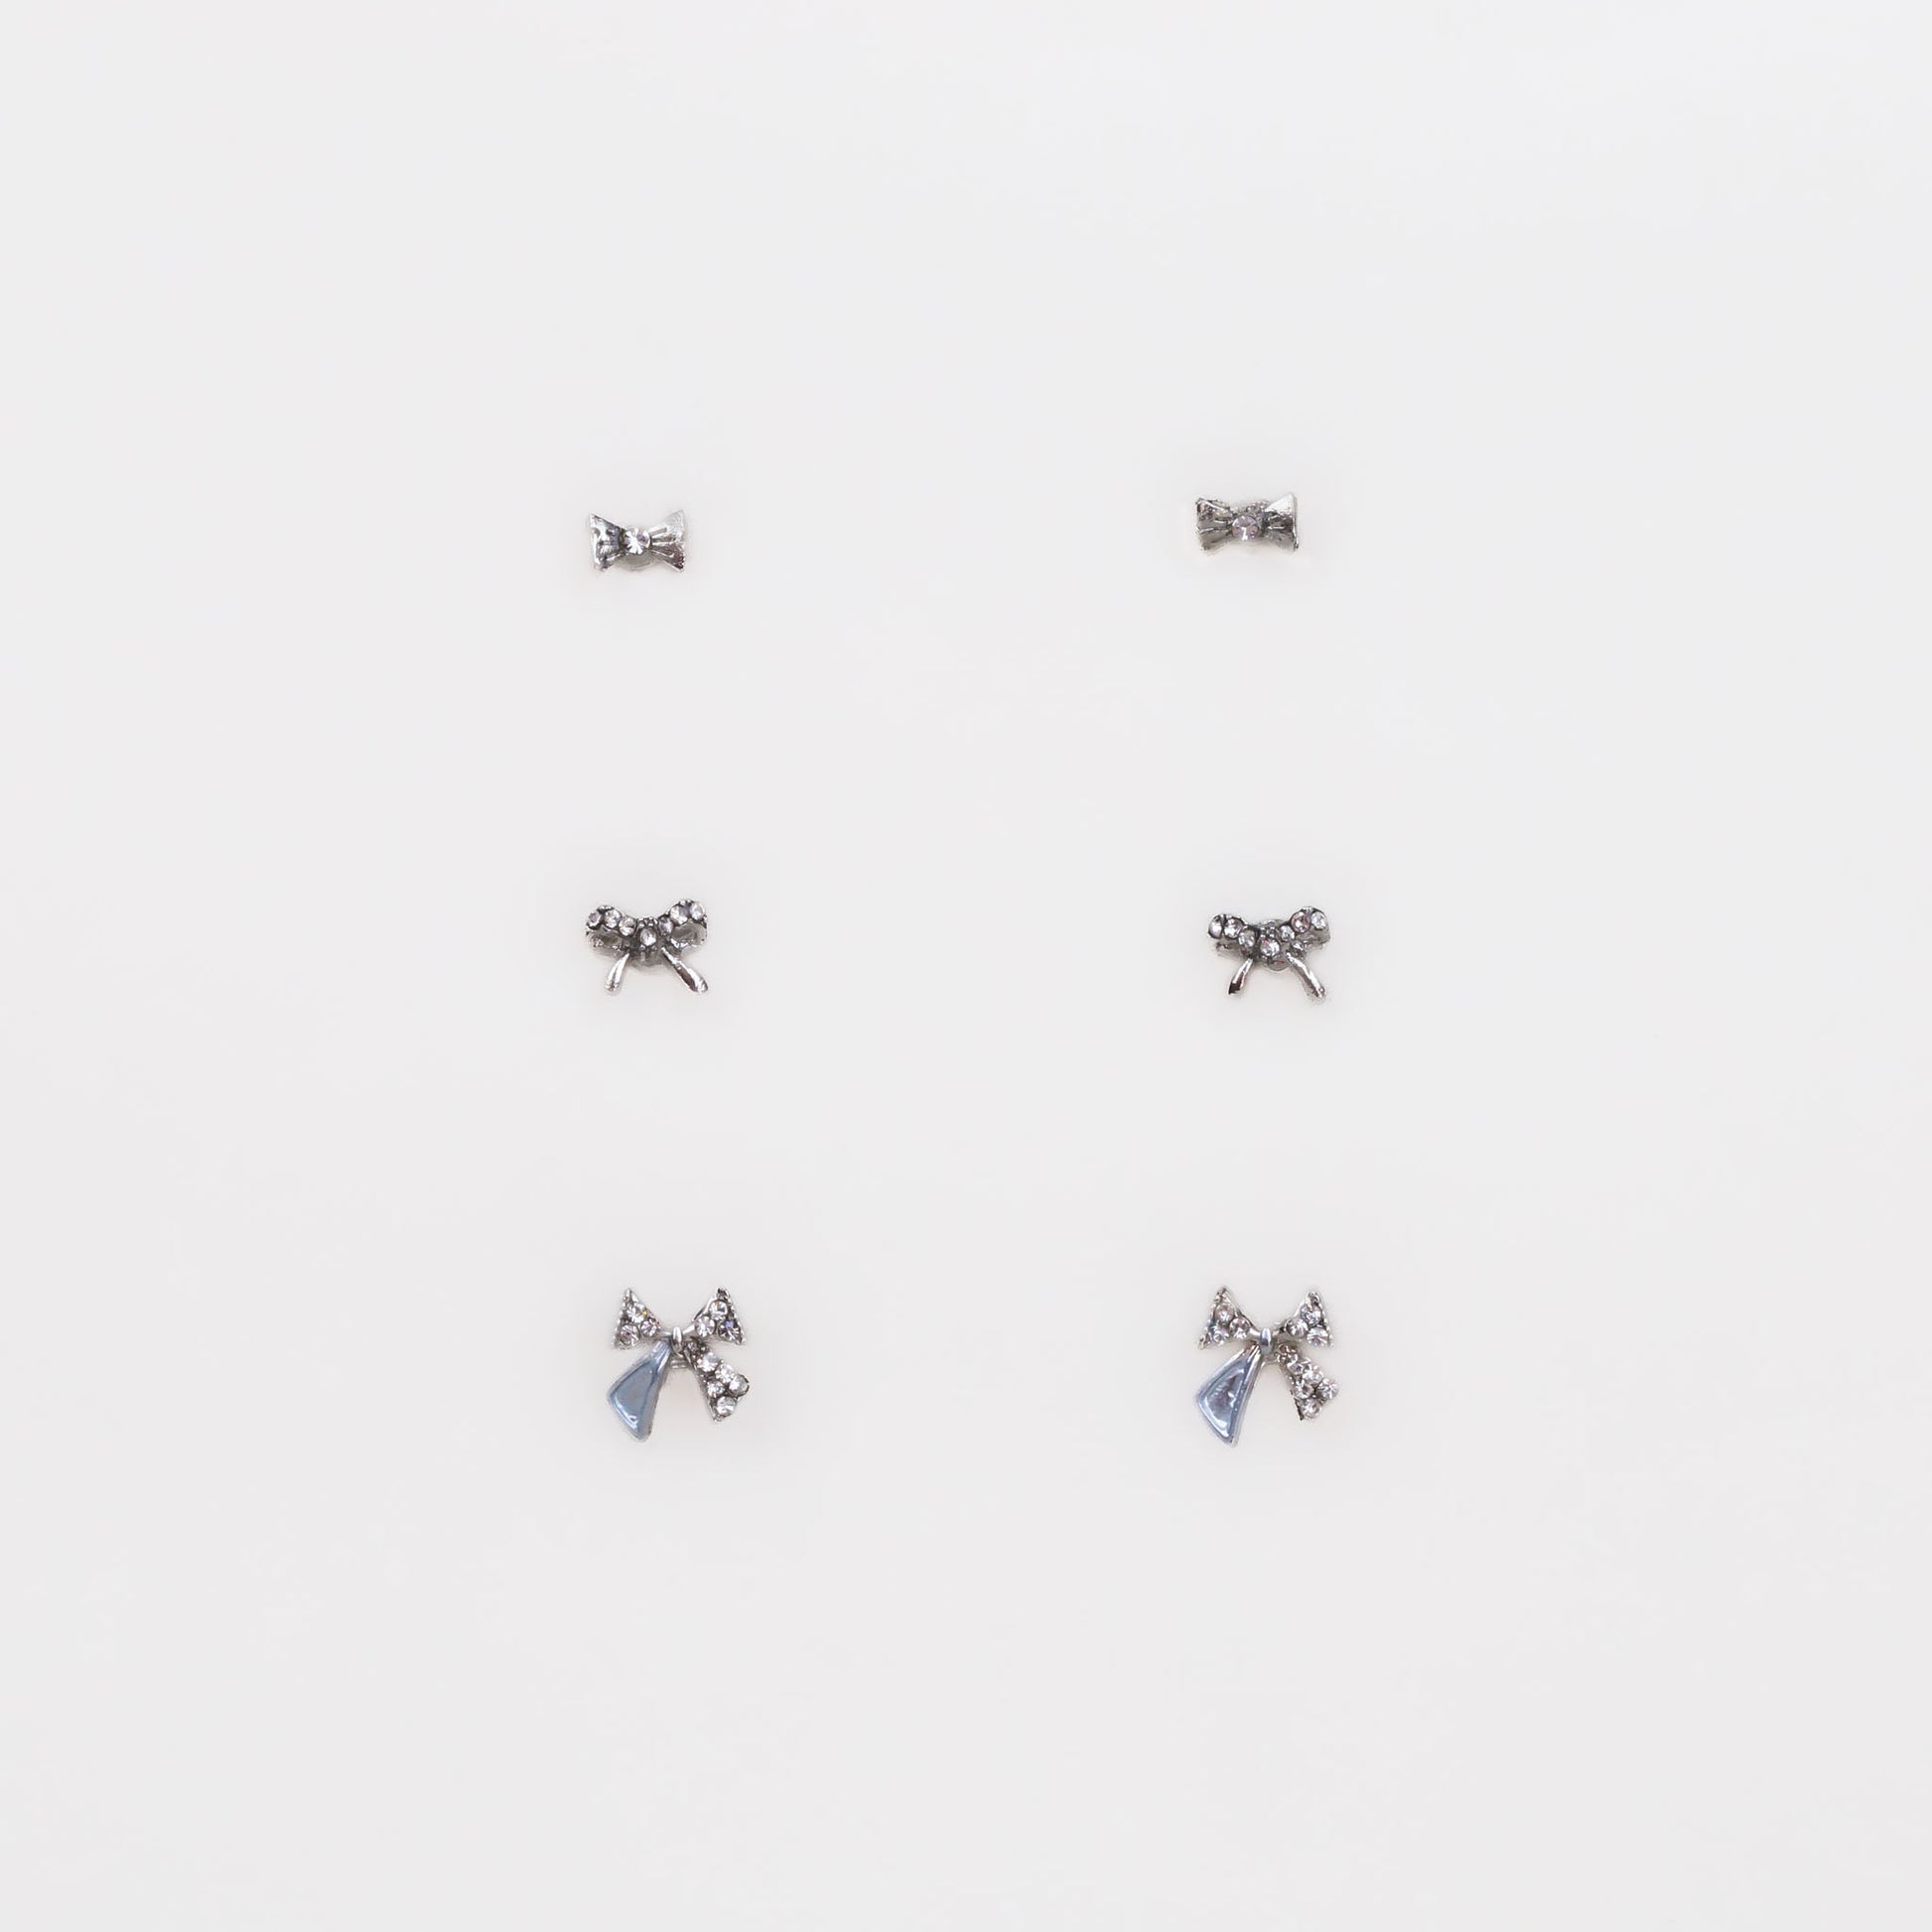 Cercei mici discreți cu fundițe și ștrasuri, set 3 perechi - Argintiu